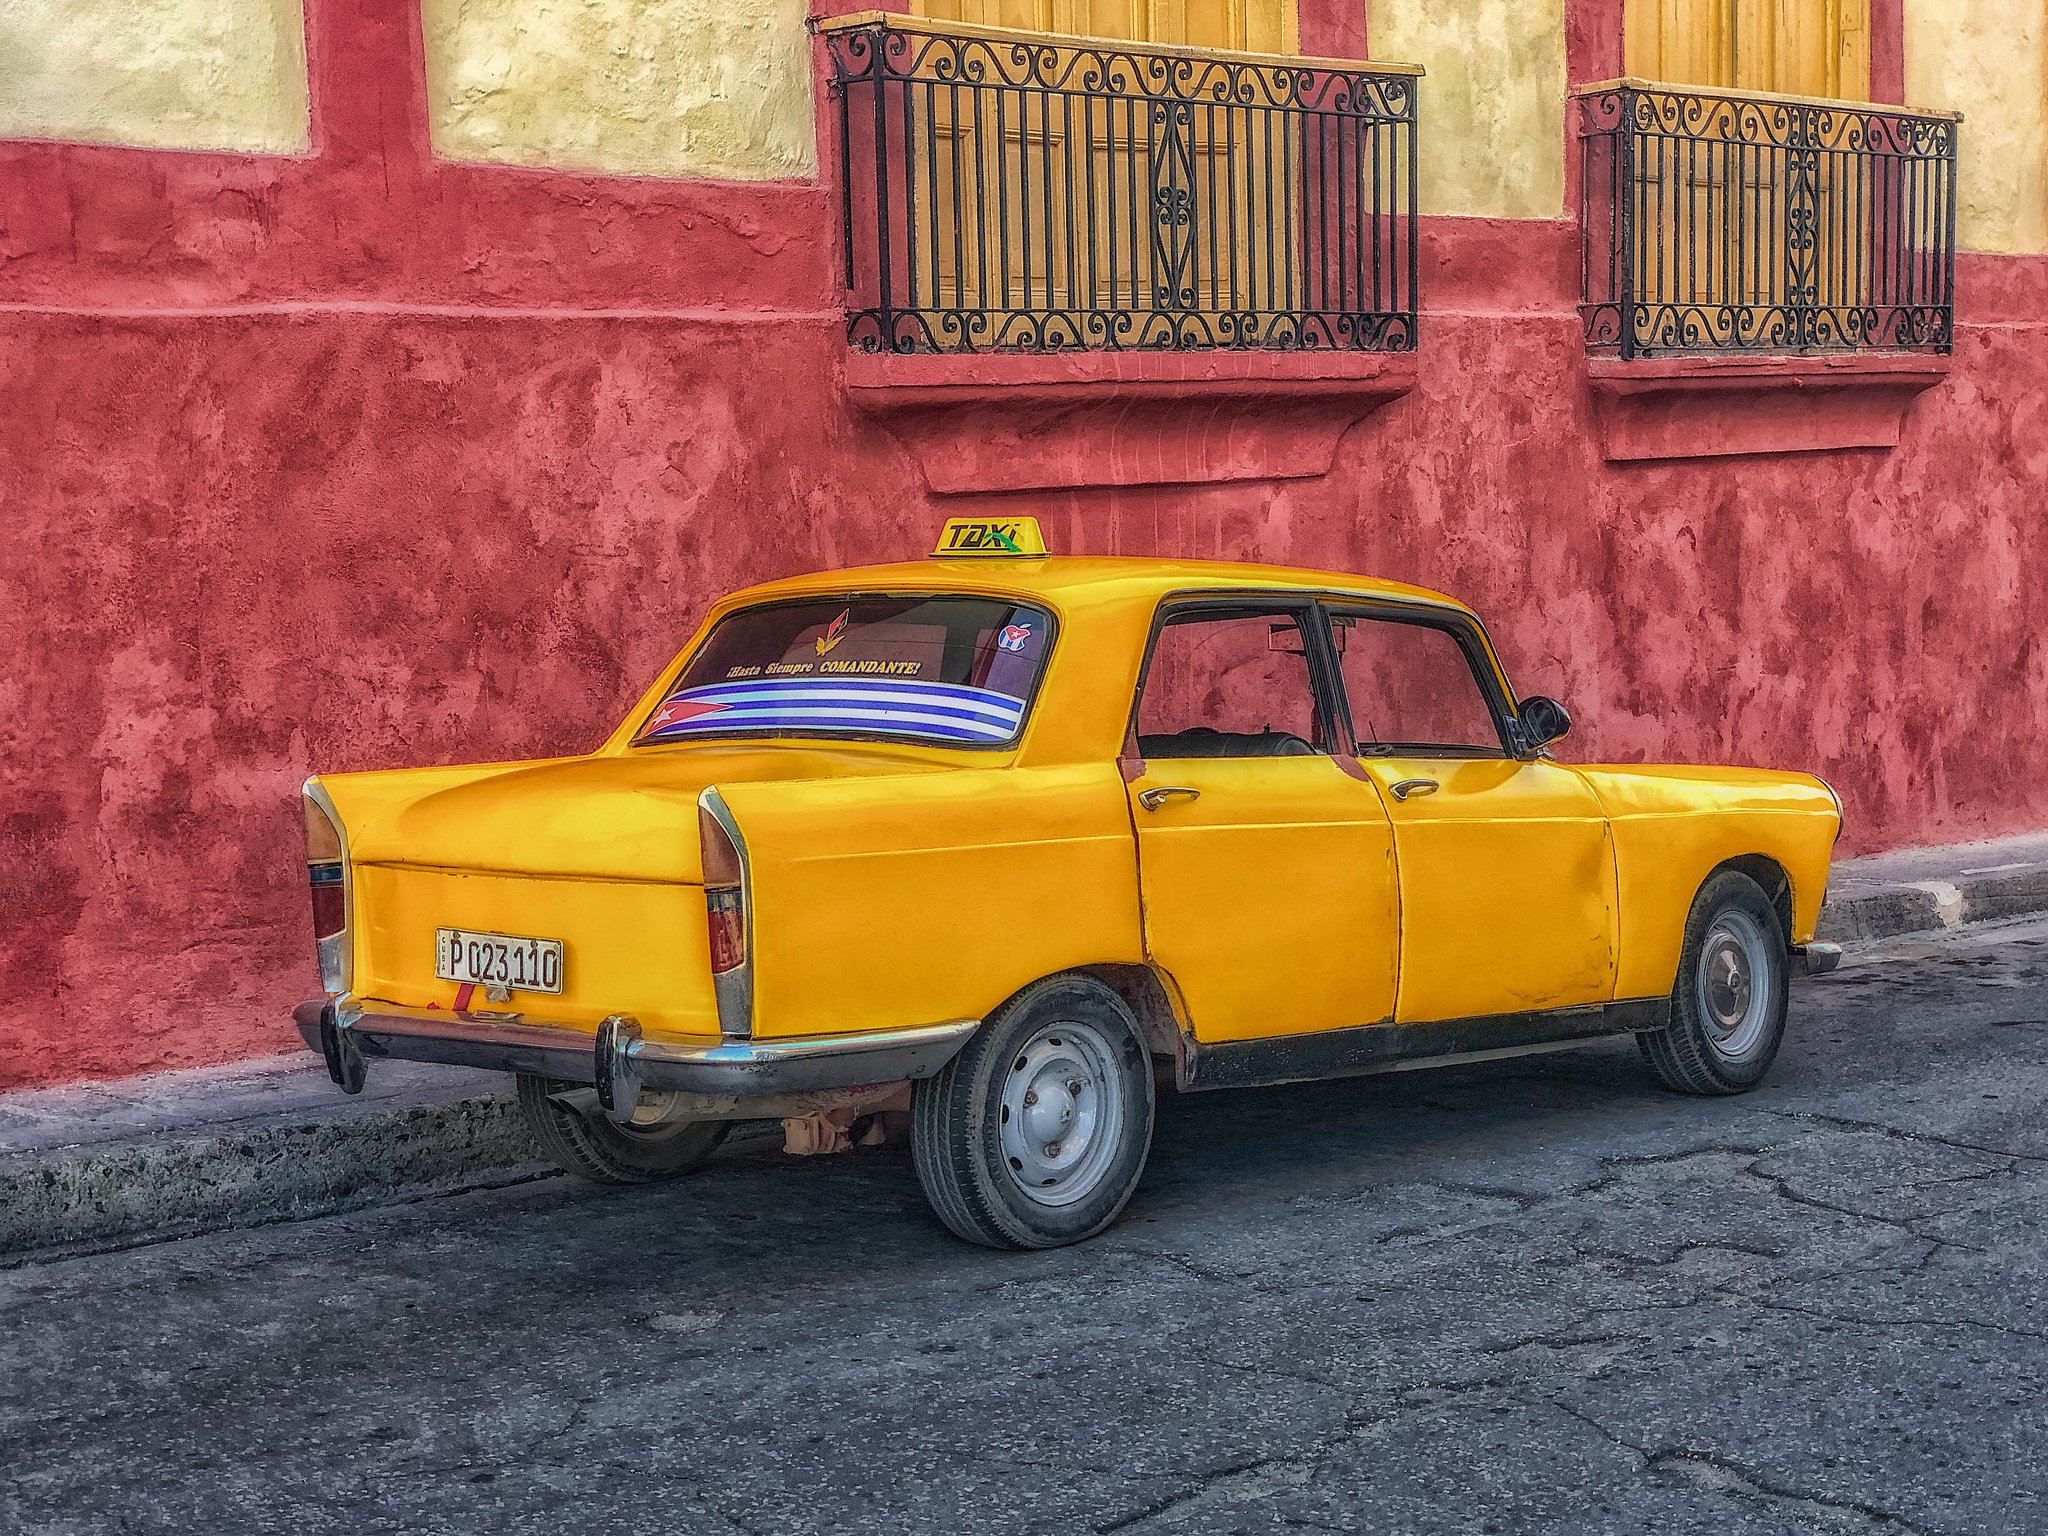 Santiago taxi